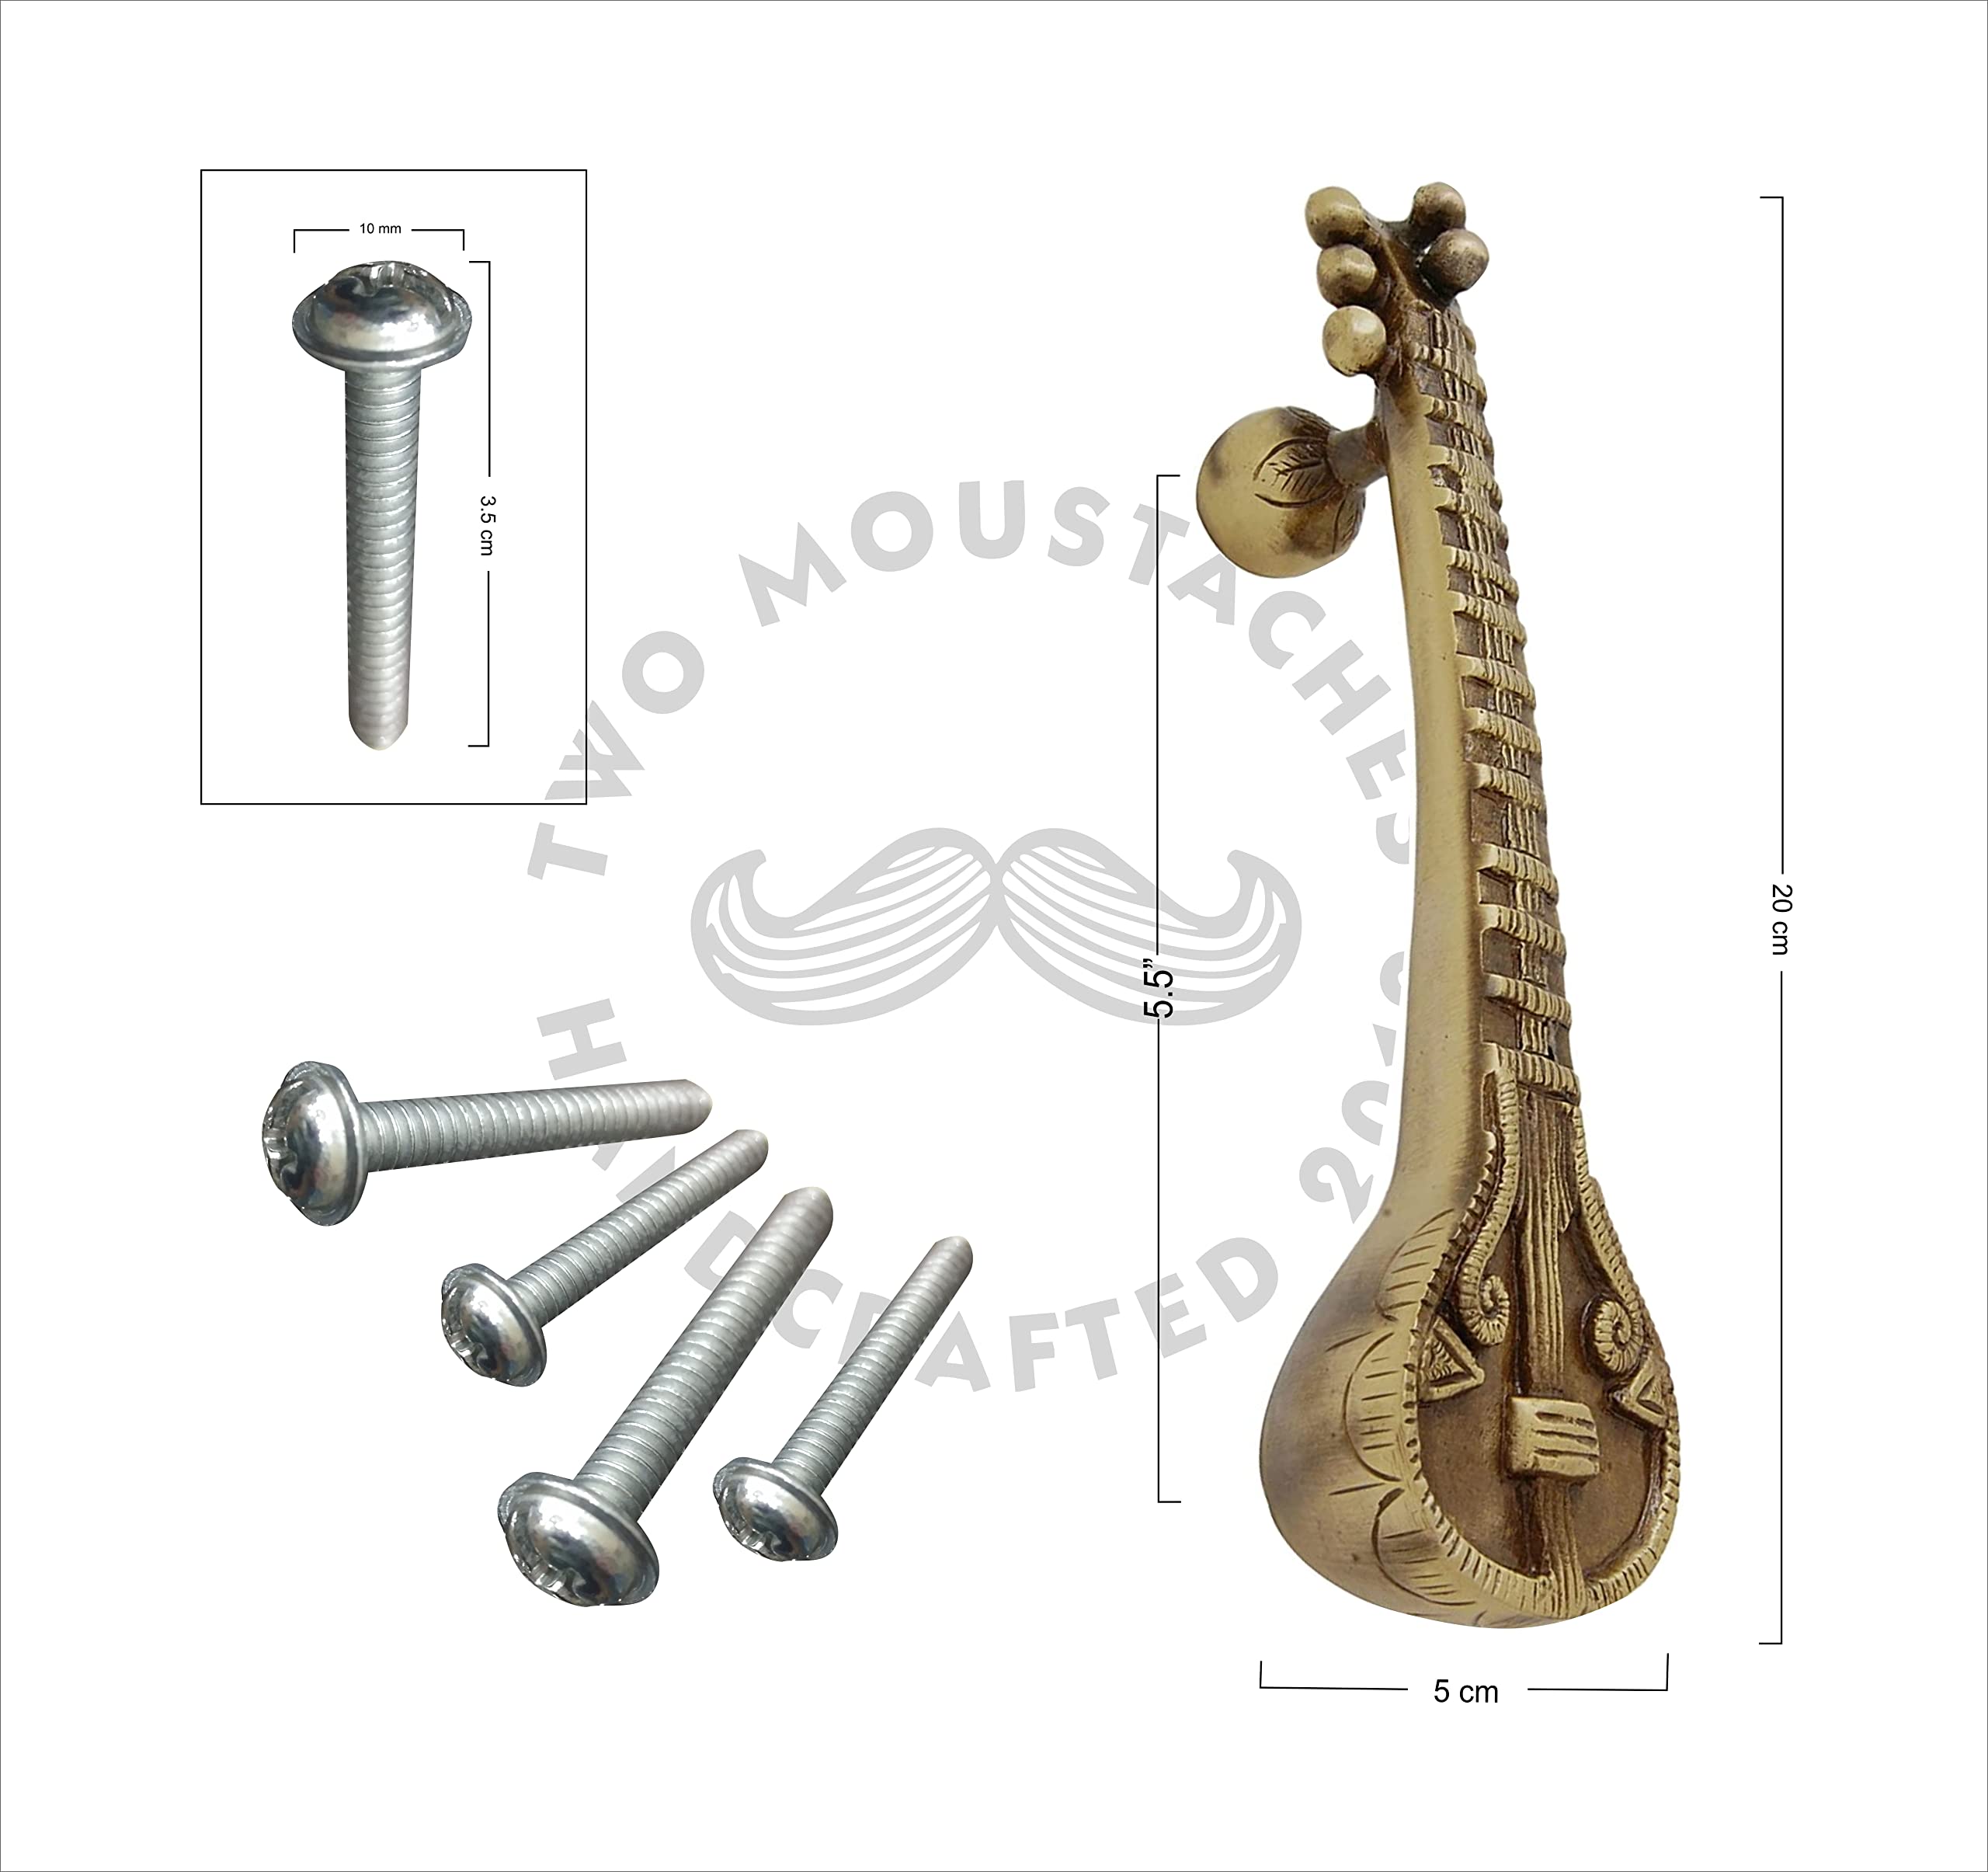 Sitar Design Brass Door Handle